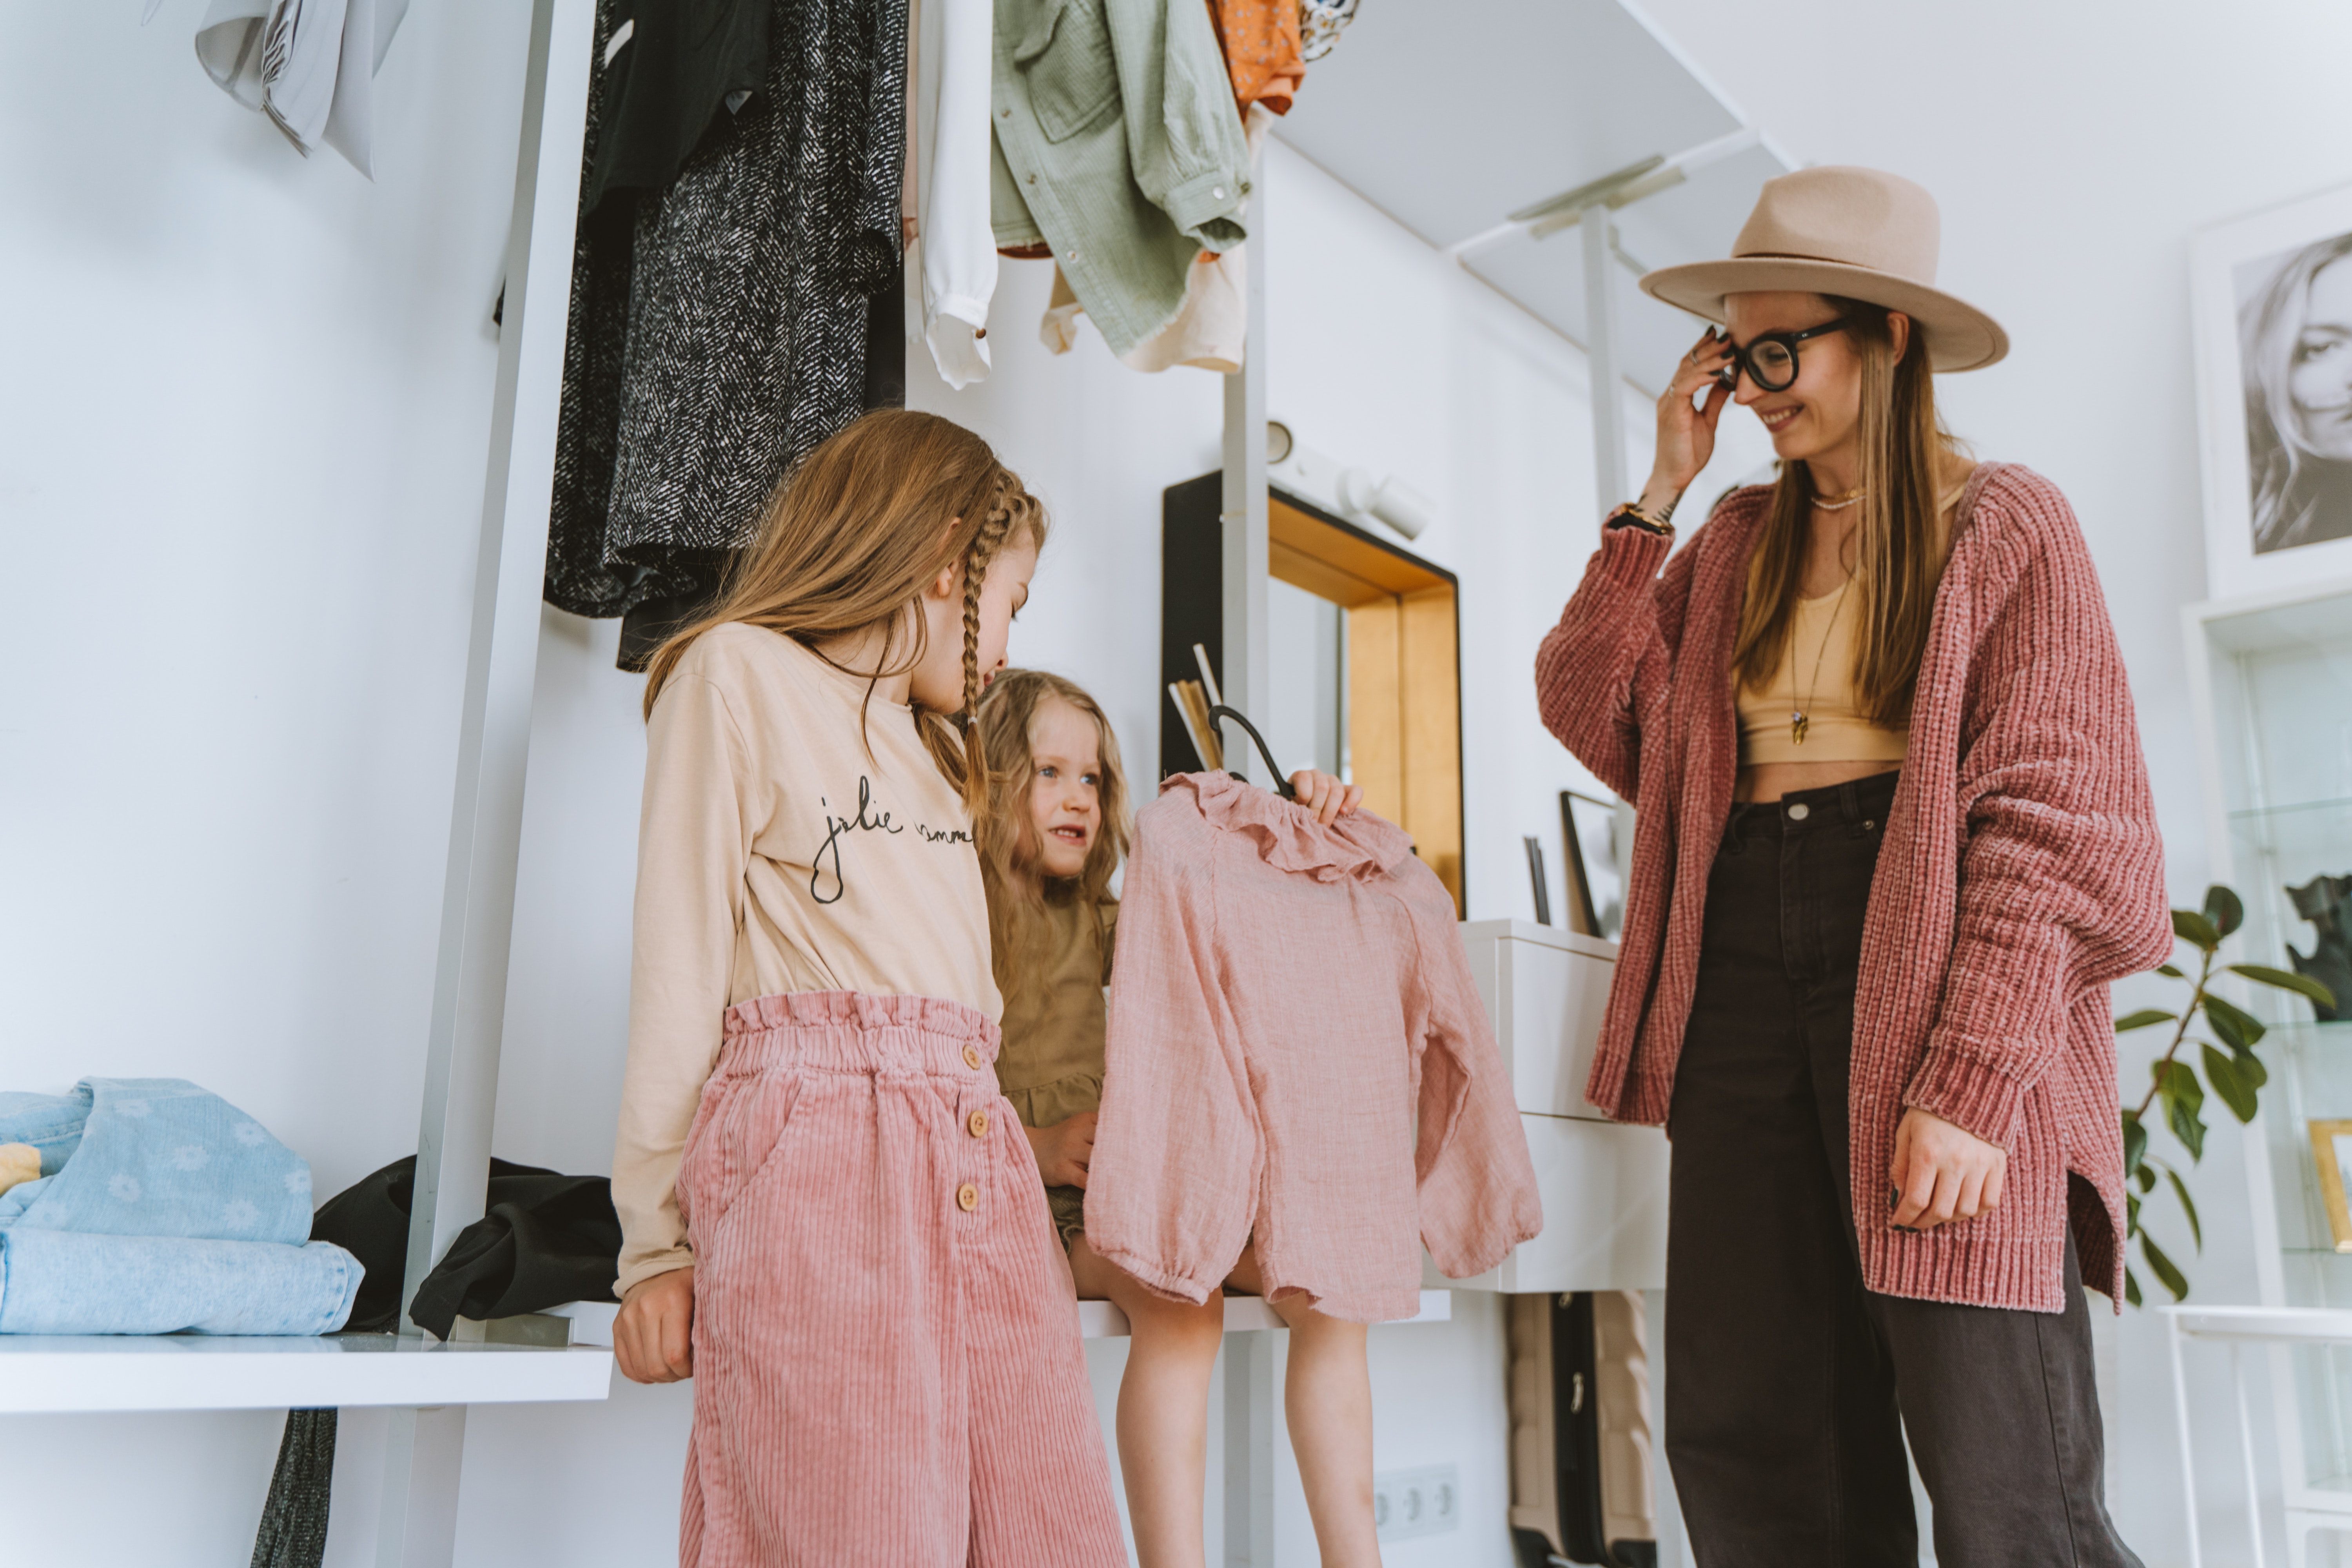 La imagen muestra tres chicas eligiendo ropa.